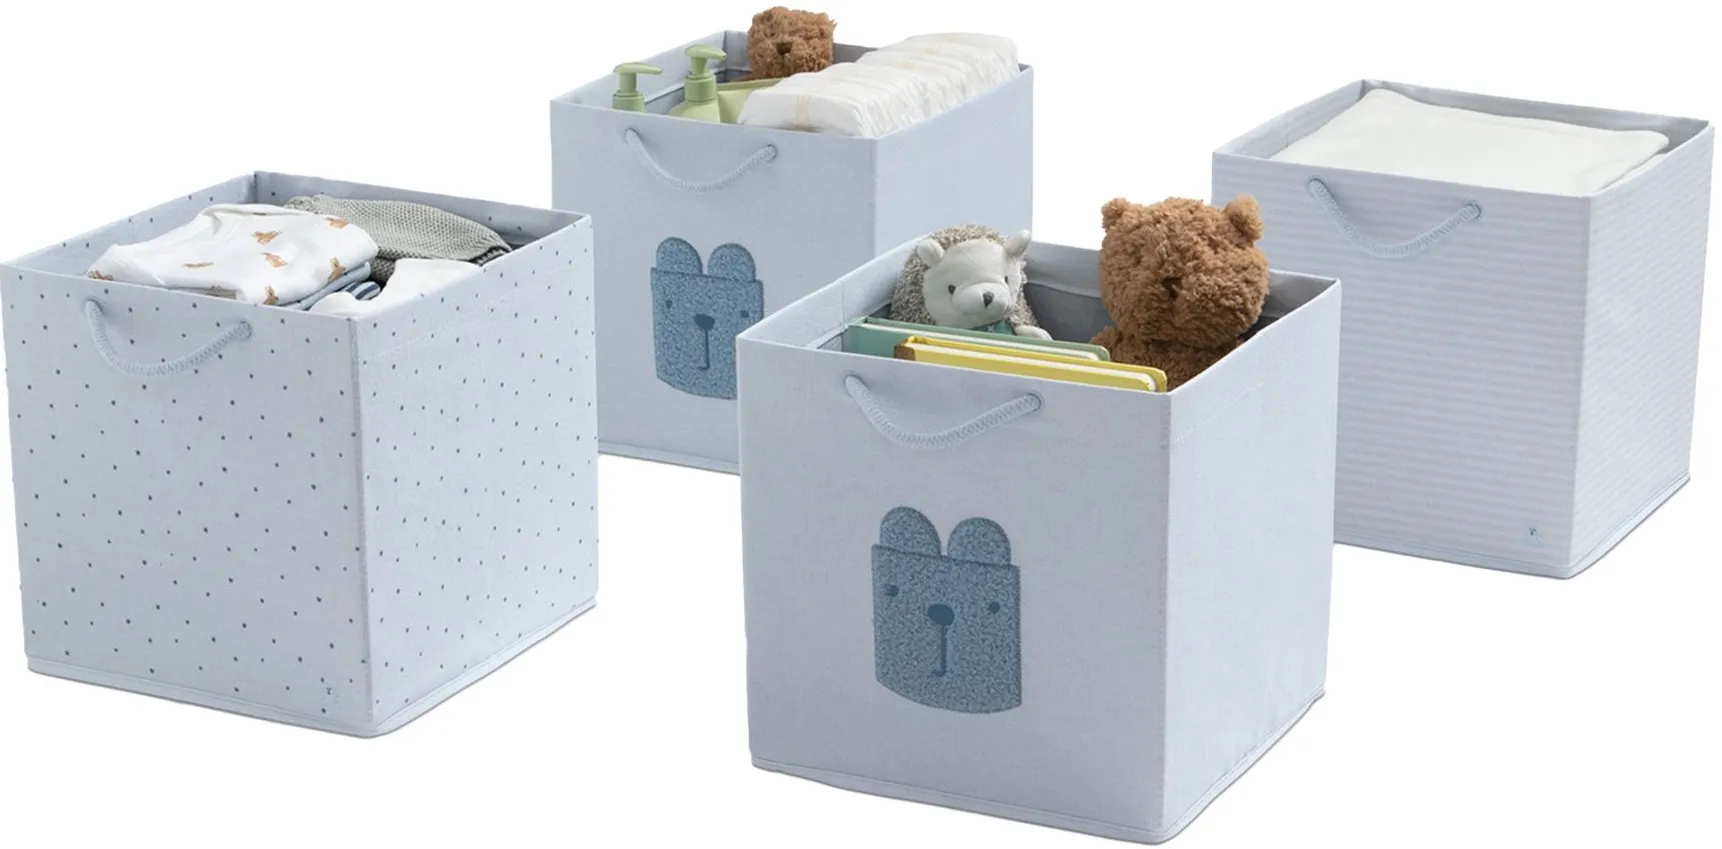 BabyGap 4-Pack Storage Bins with Handles by Delta Children in Blue by Delta Children